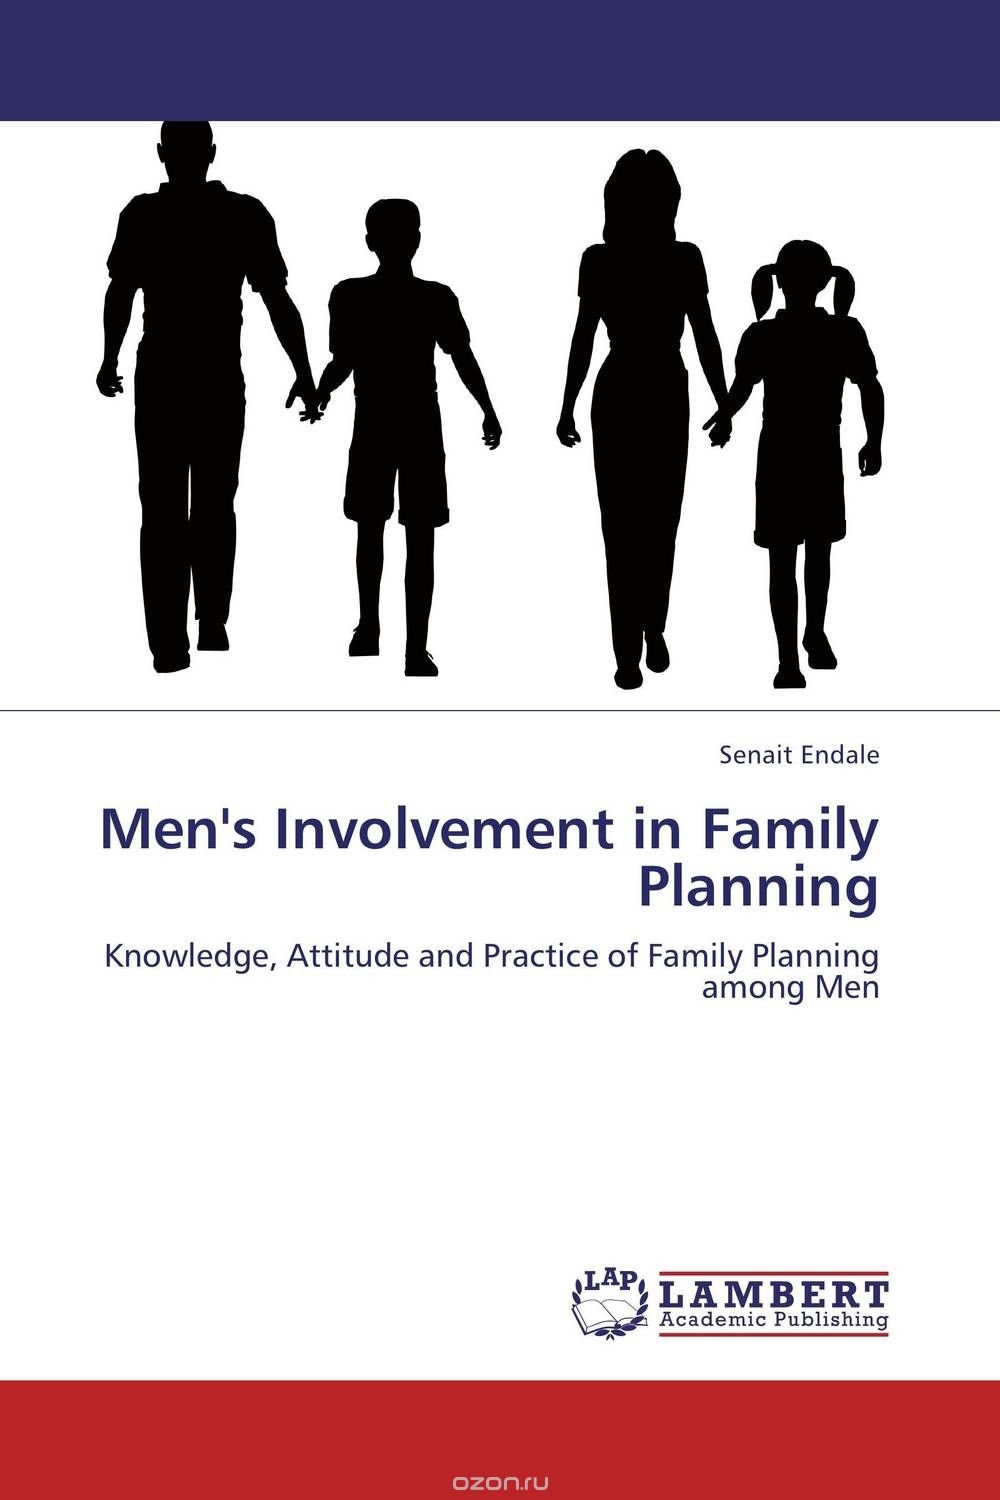 Men's Involvement in Family Planning